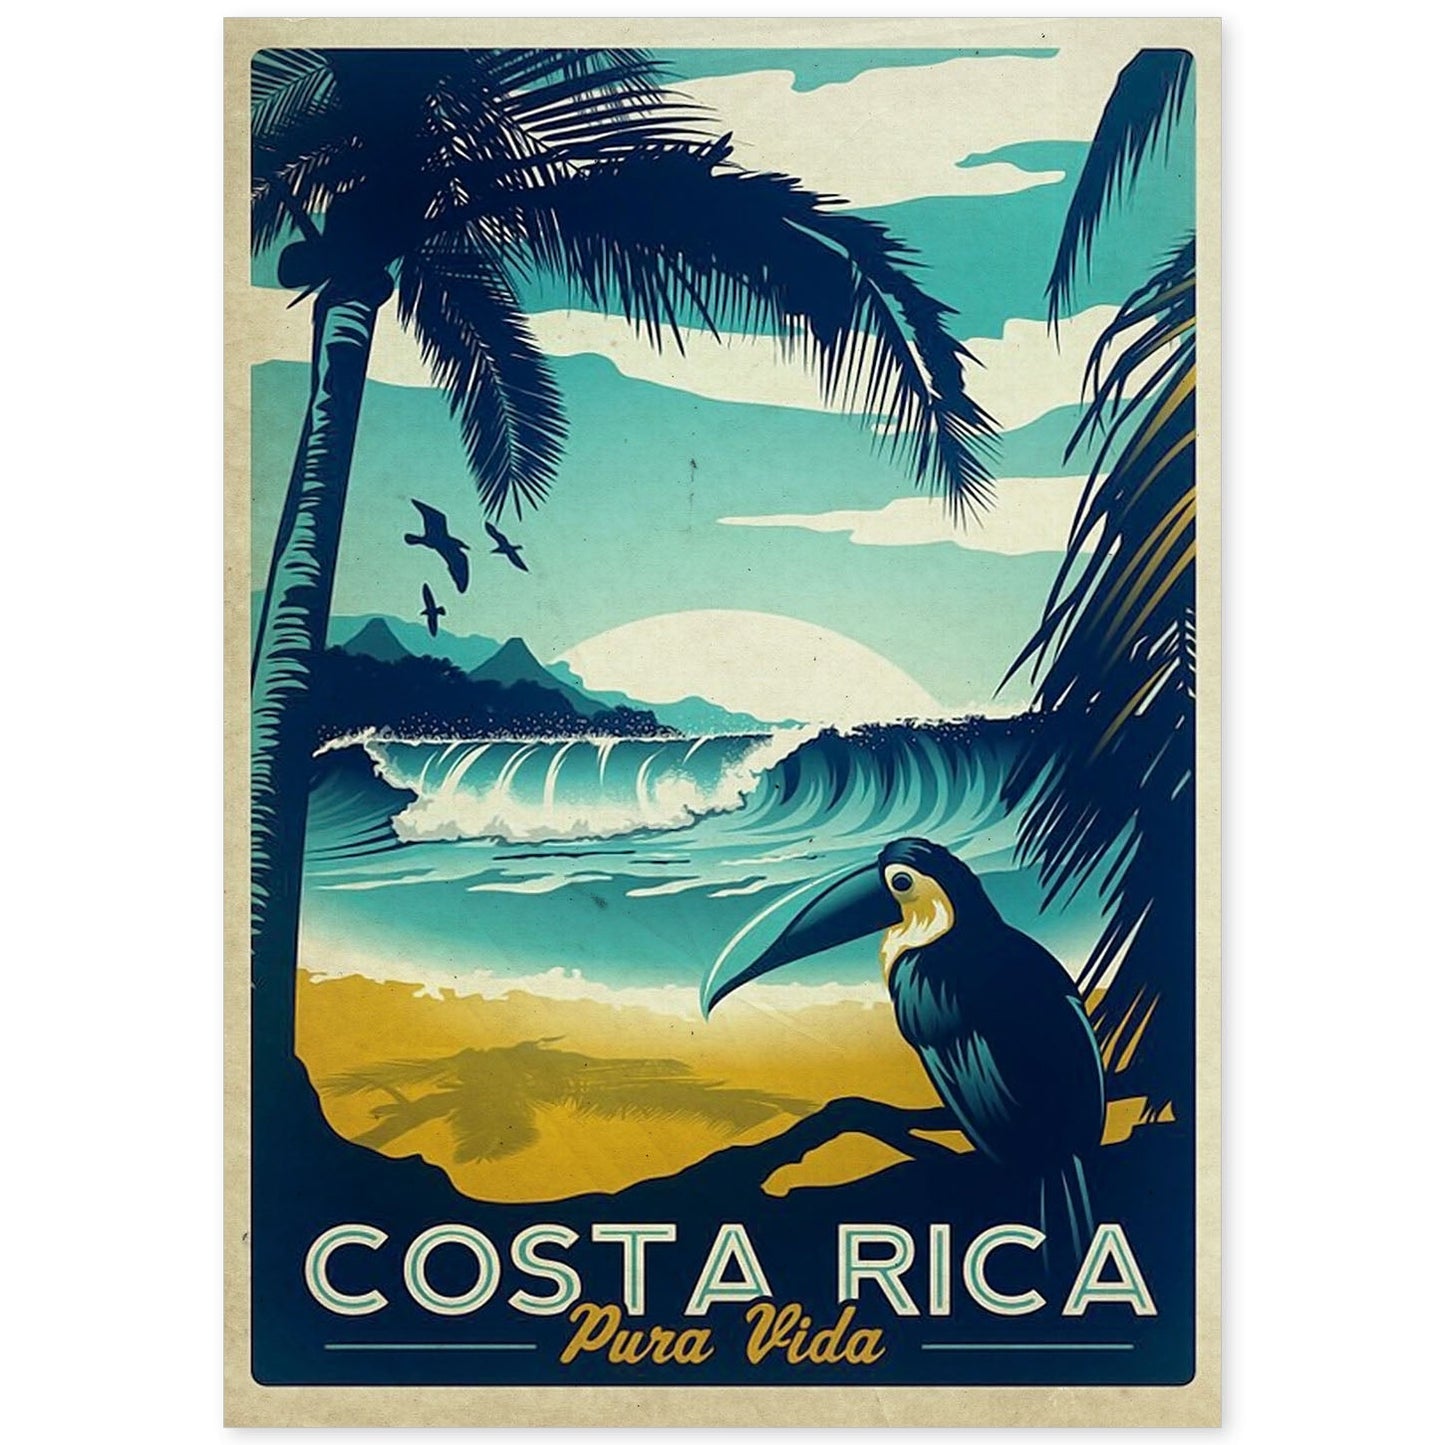 Poster vintage de Costa rica. con imágenes vintage y de publicidad antigua.-Artwork-Nacnic-A4-Sin marco-Nacnic Estudio SL